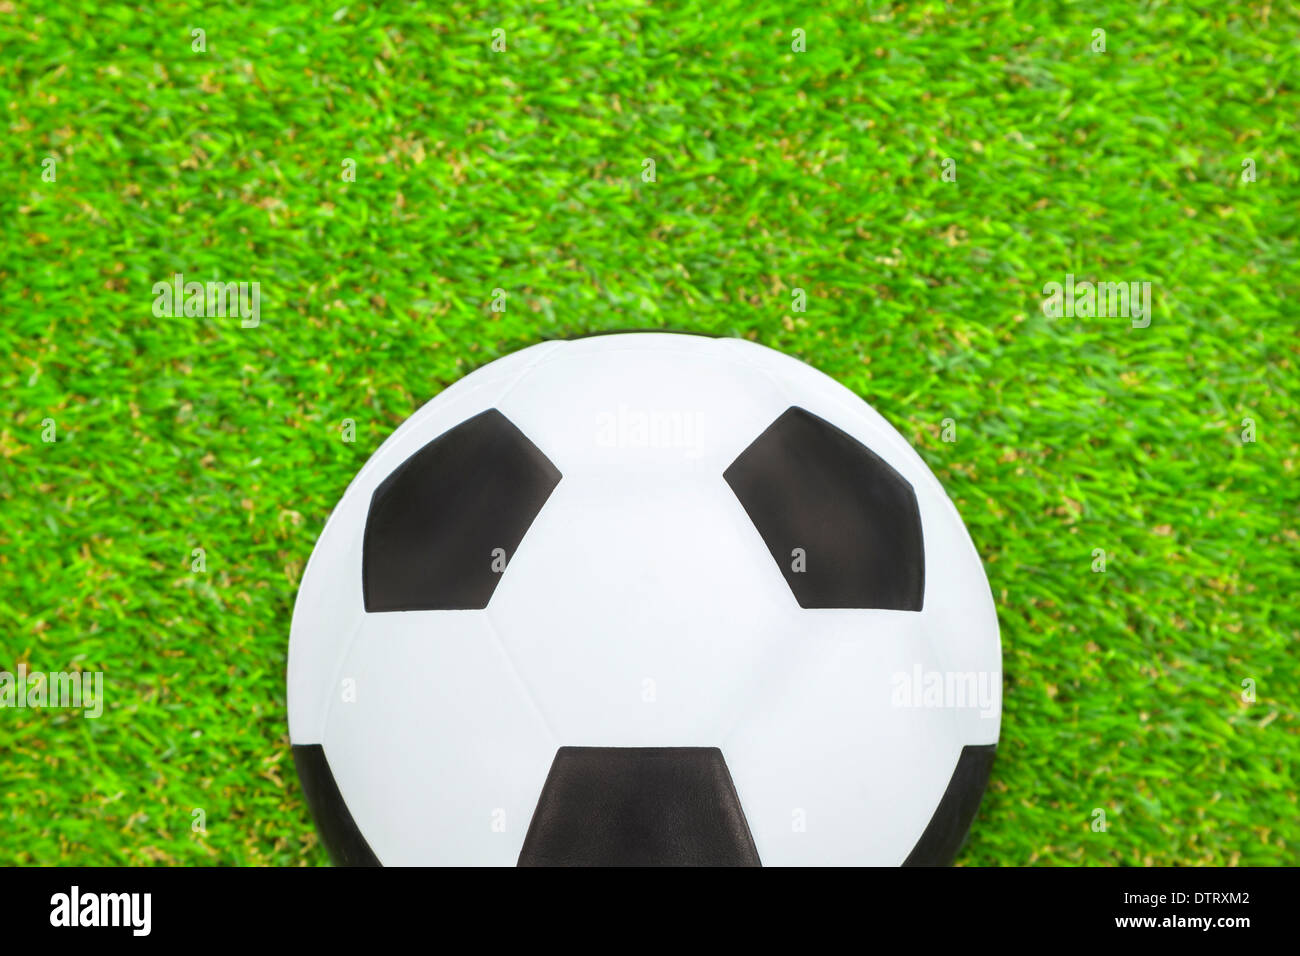 Fußball auf der grünen Wiese Stockfoto